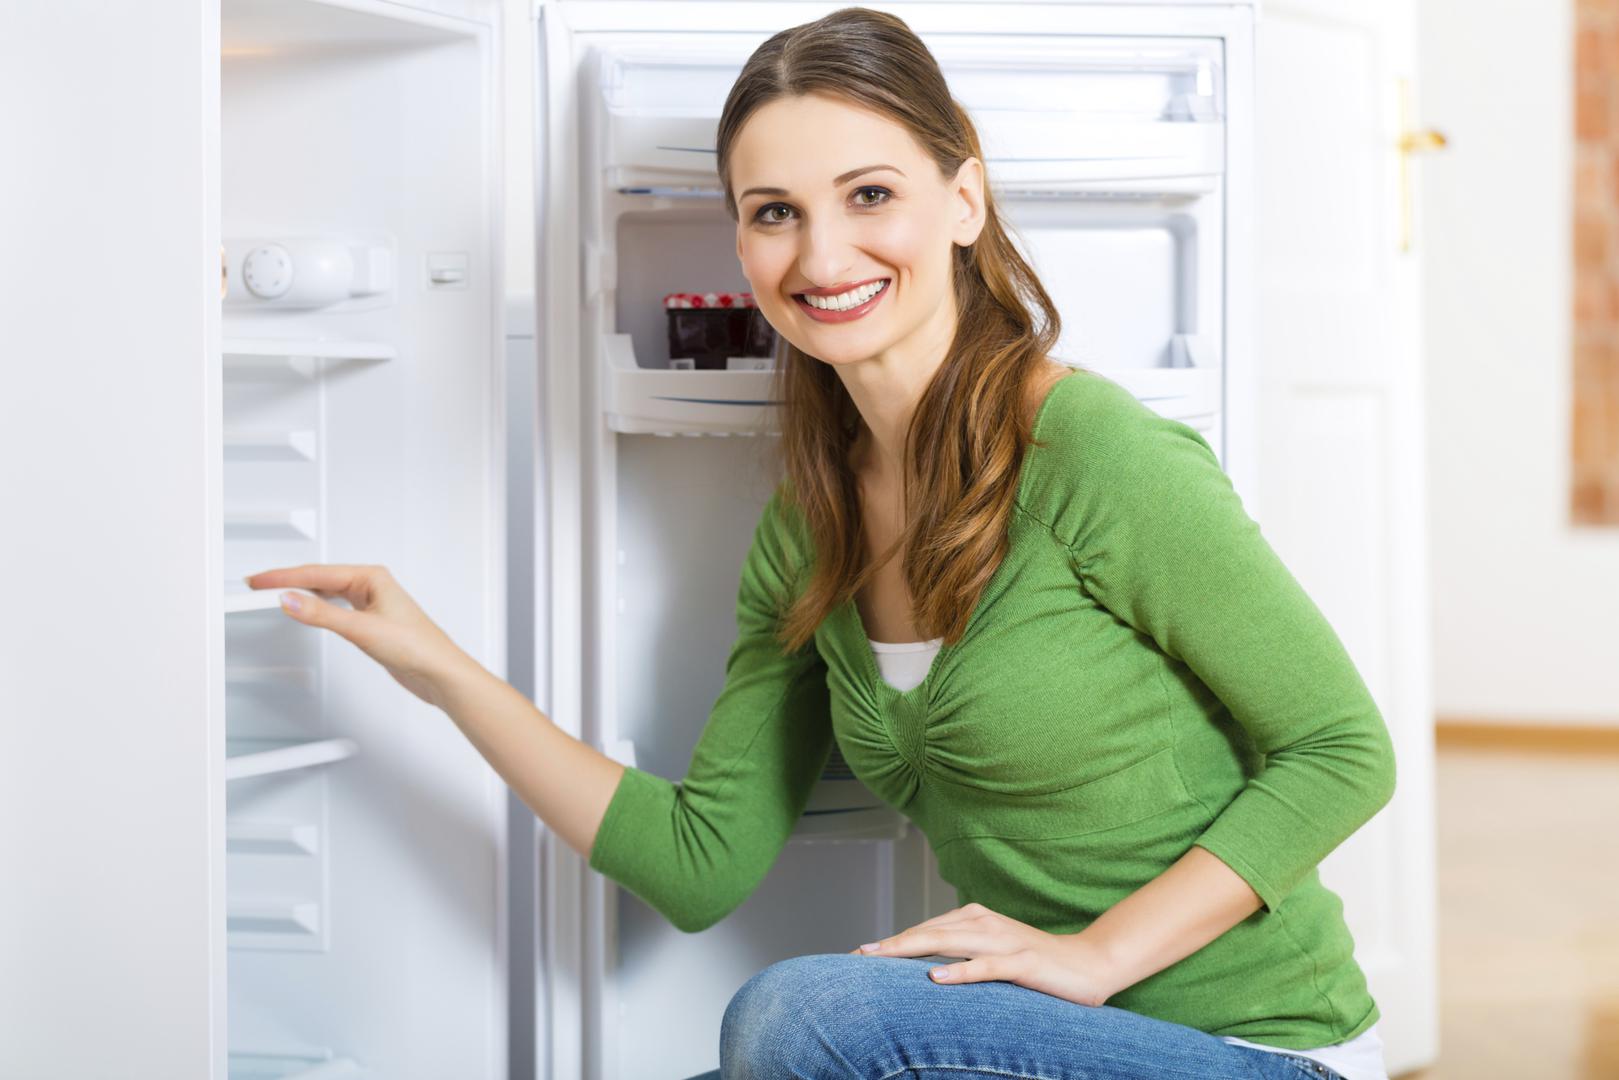 Upravo je previsoka temperatura u hladnjacima uzrok prebrze kvarljivosti namirnca zbog čega se poprilična količina hrane baca, piše Huffington Post. 